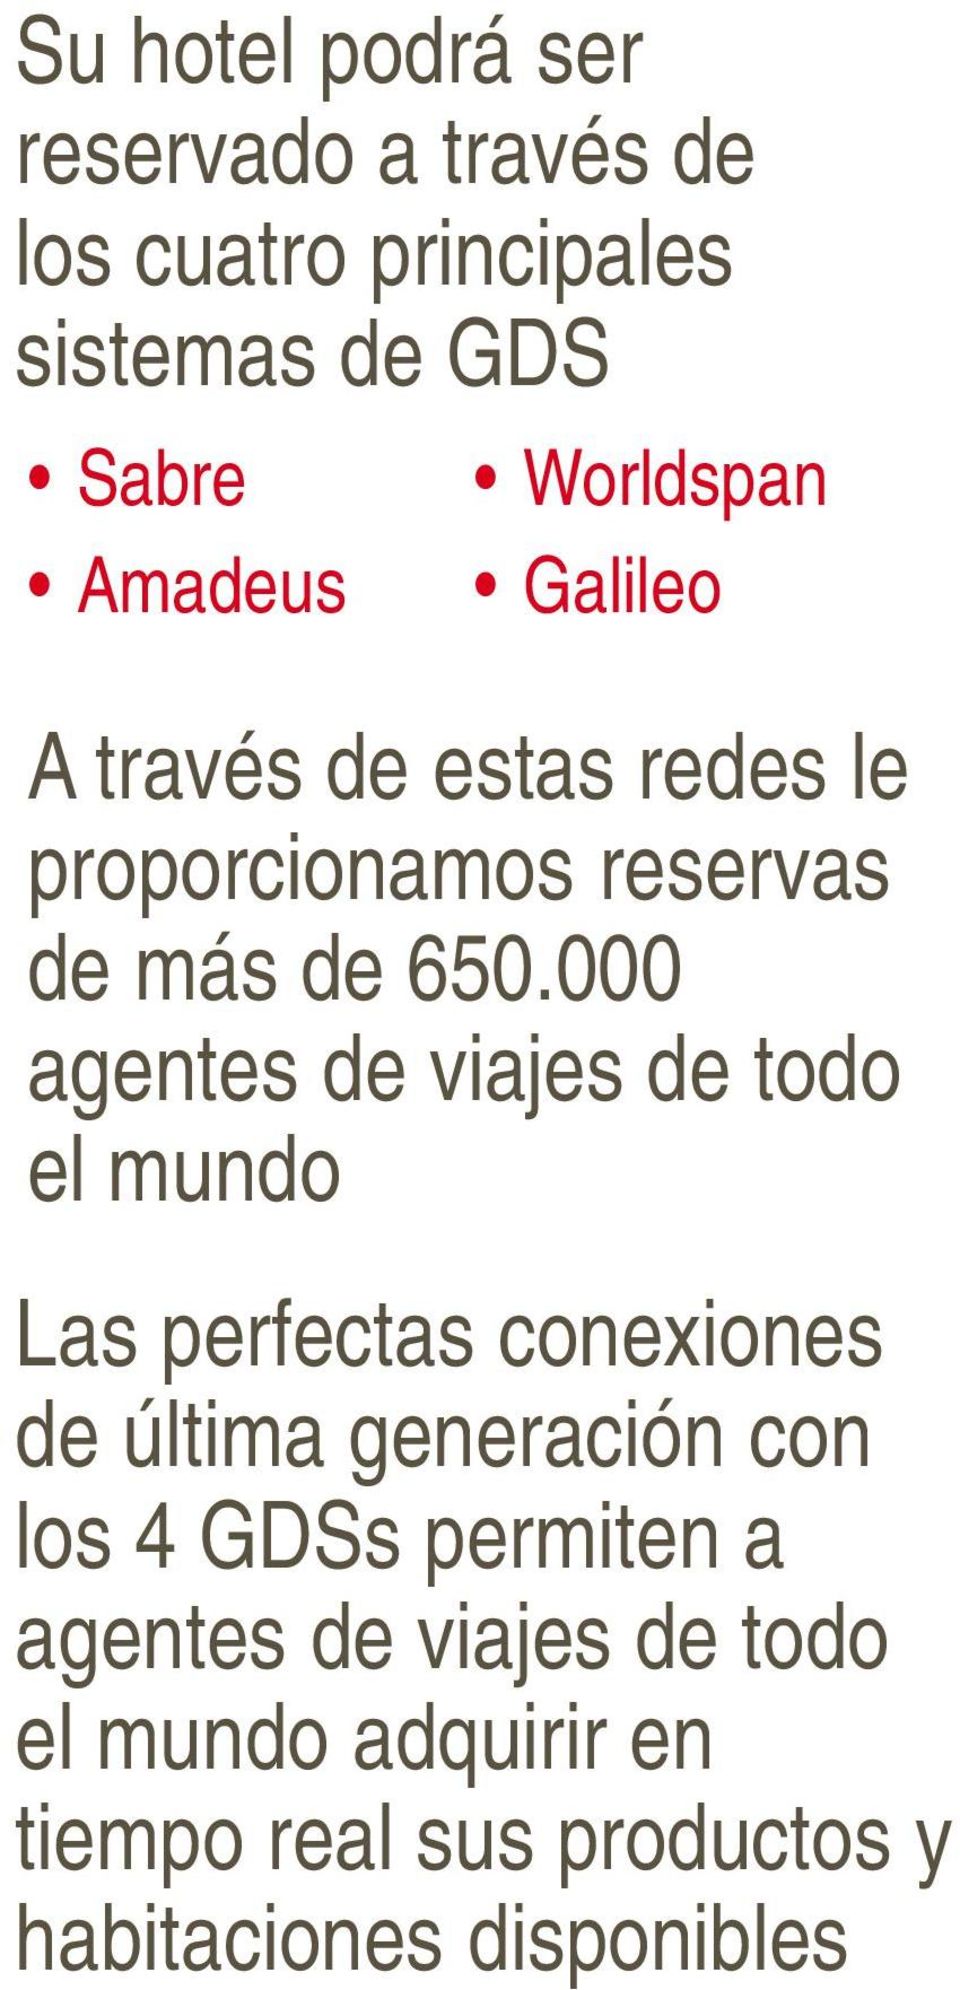 de GDS Sabre Amadeus Worldspan Galileo A través de estas redes le proporcionamos reservas de más de 650.